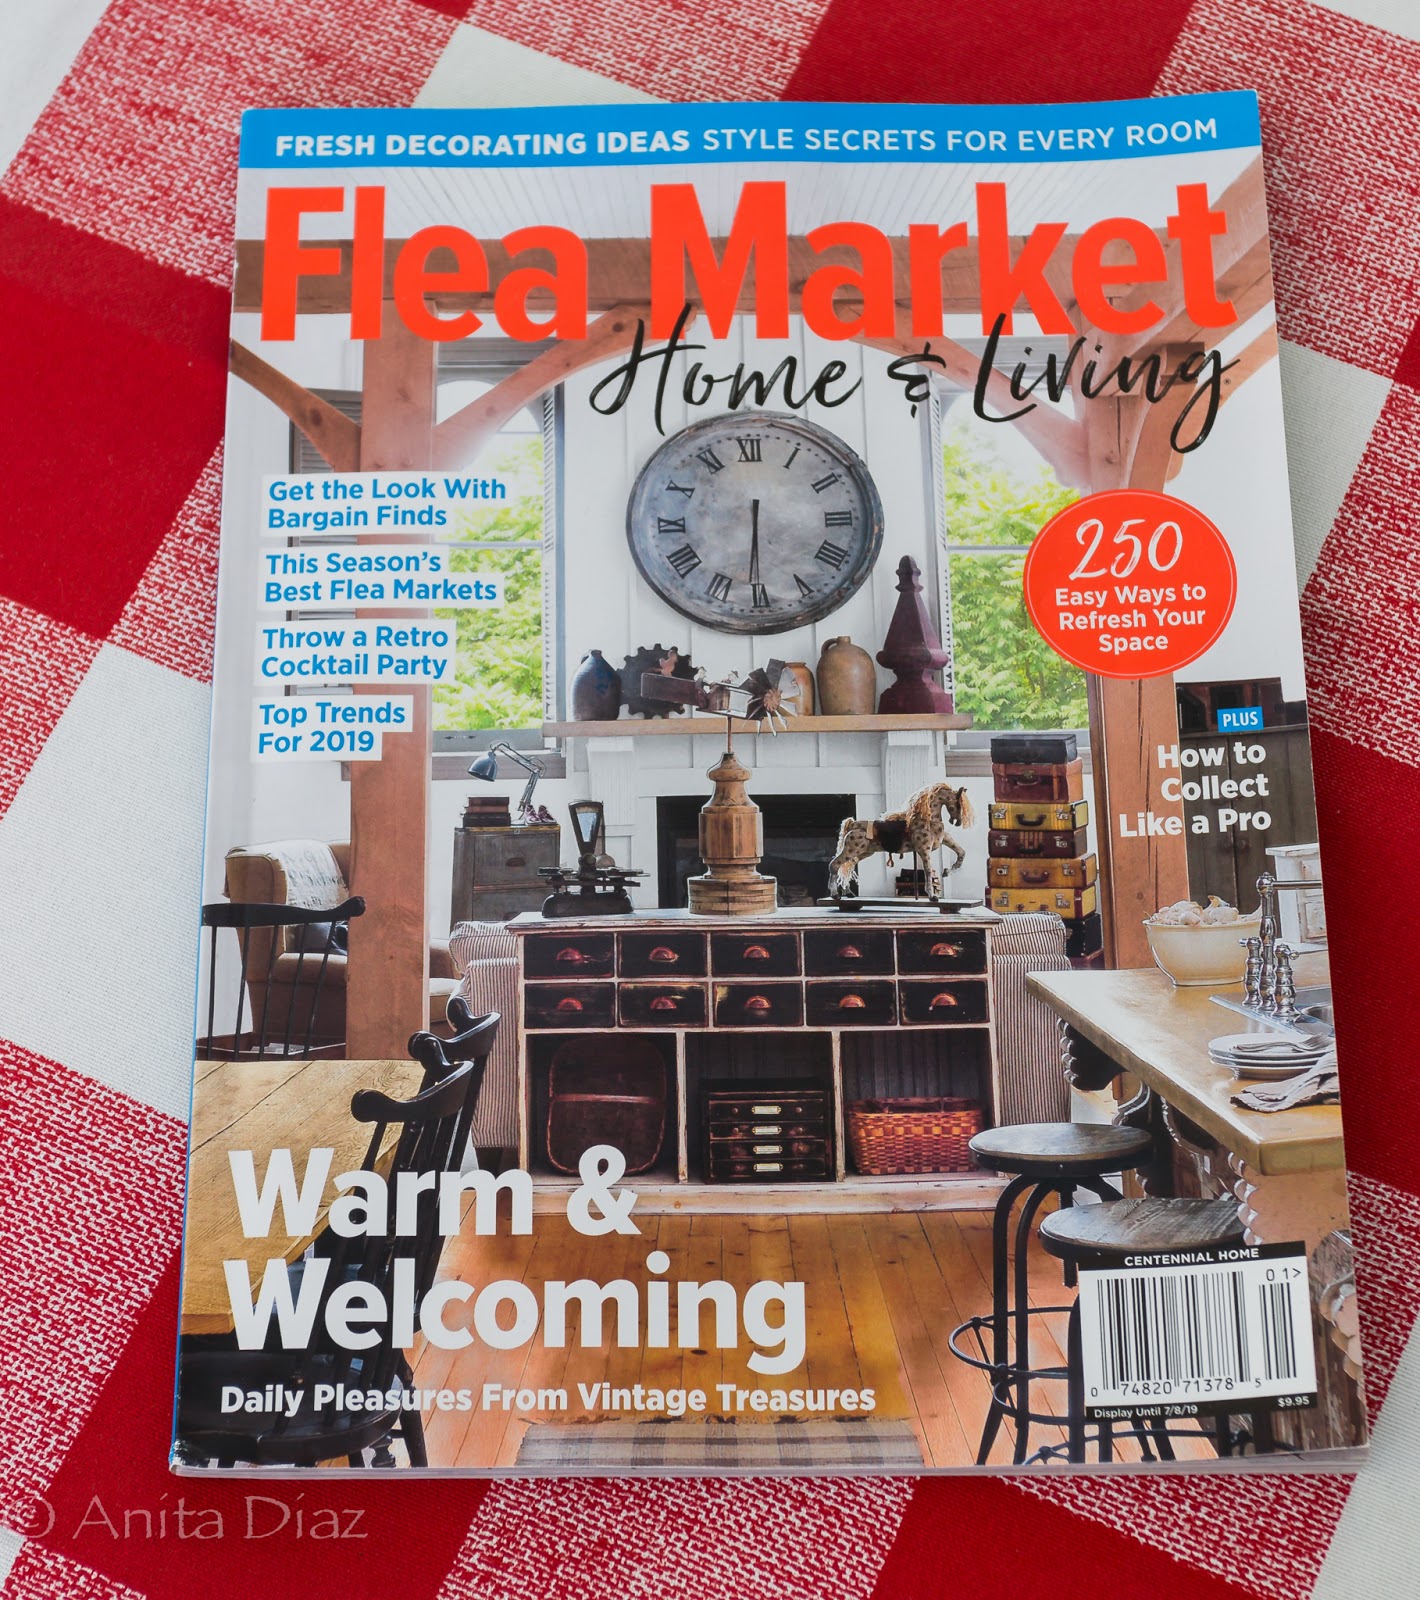 Flea Market Home & Living